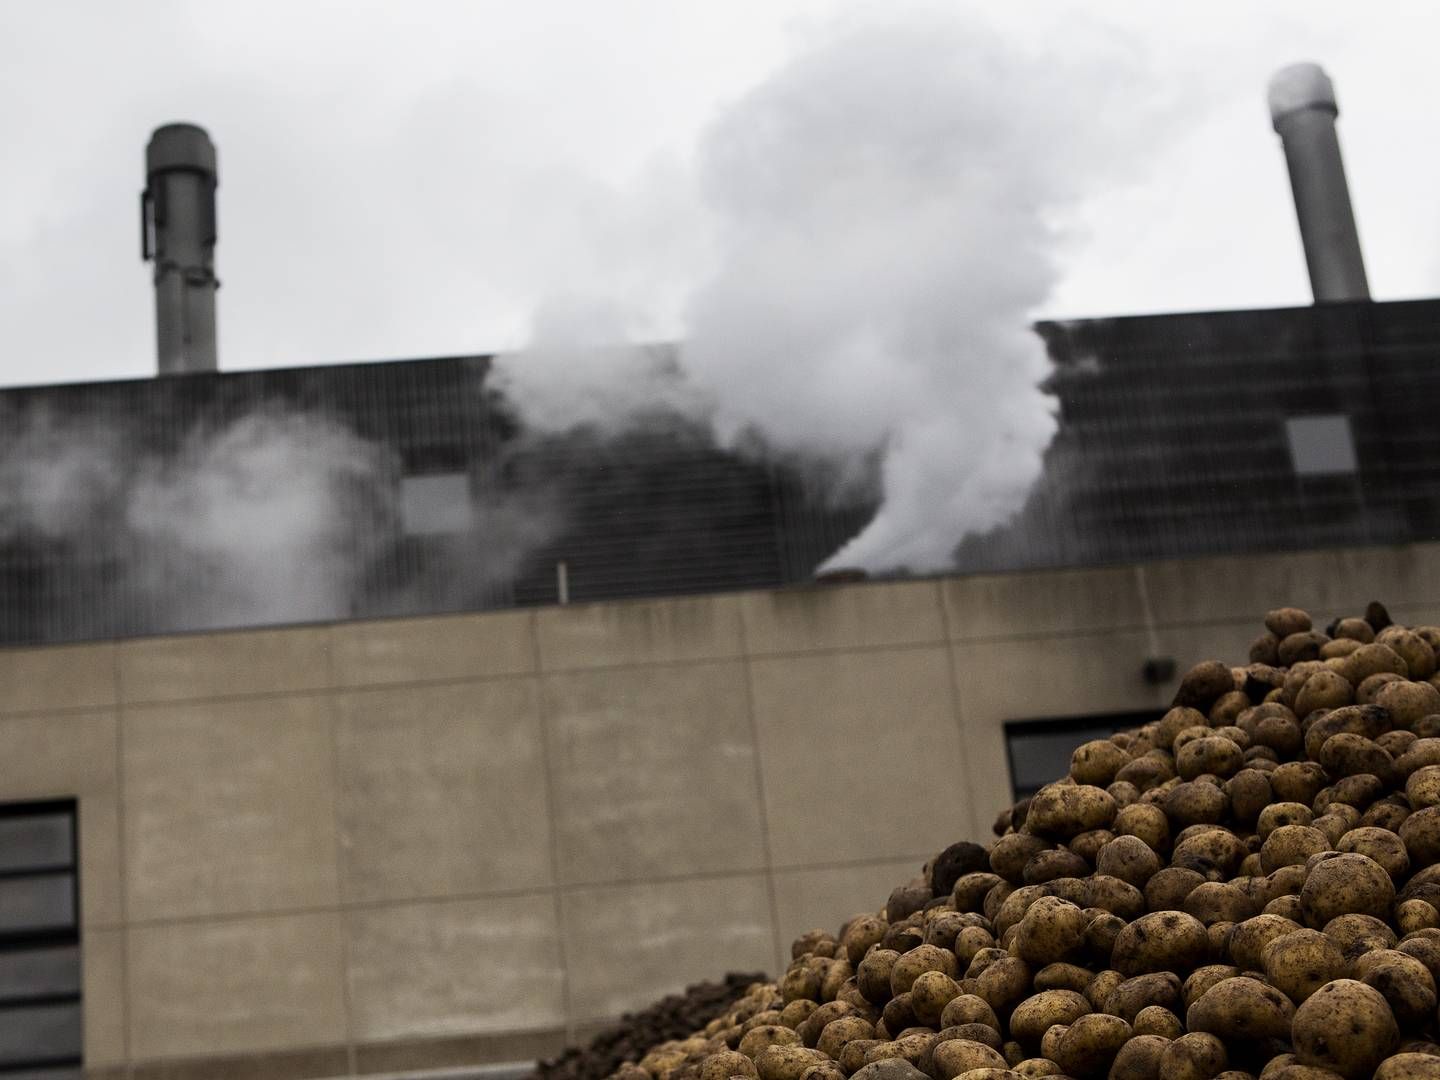 Fabrikken KMC i Brande producerer blandt andet kartoffelmel. Overskudsvarme fra en virksomhed som denne kan muligvis udnyttes til anden varme. | Foto: Janus Engel